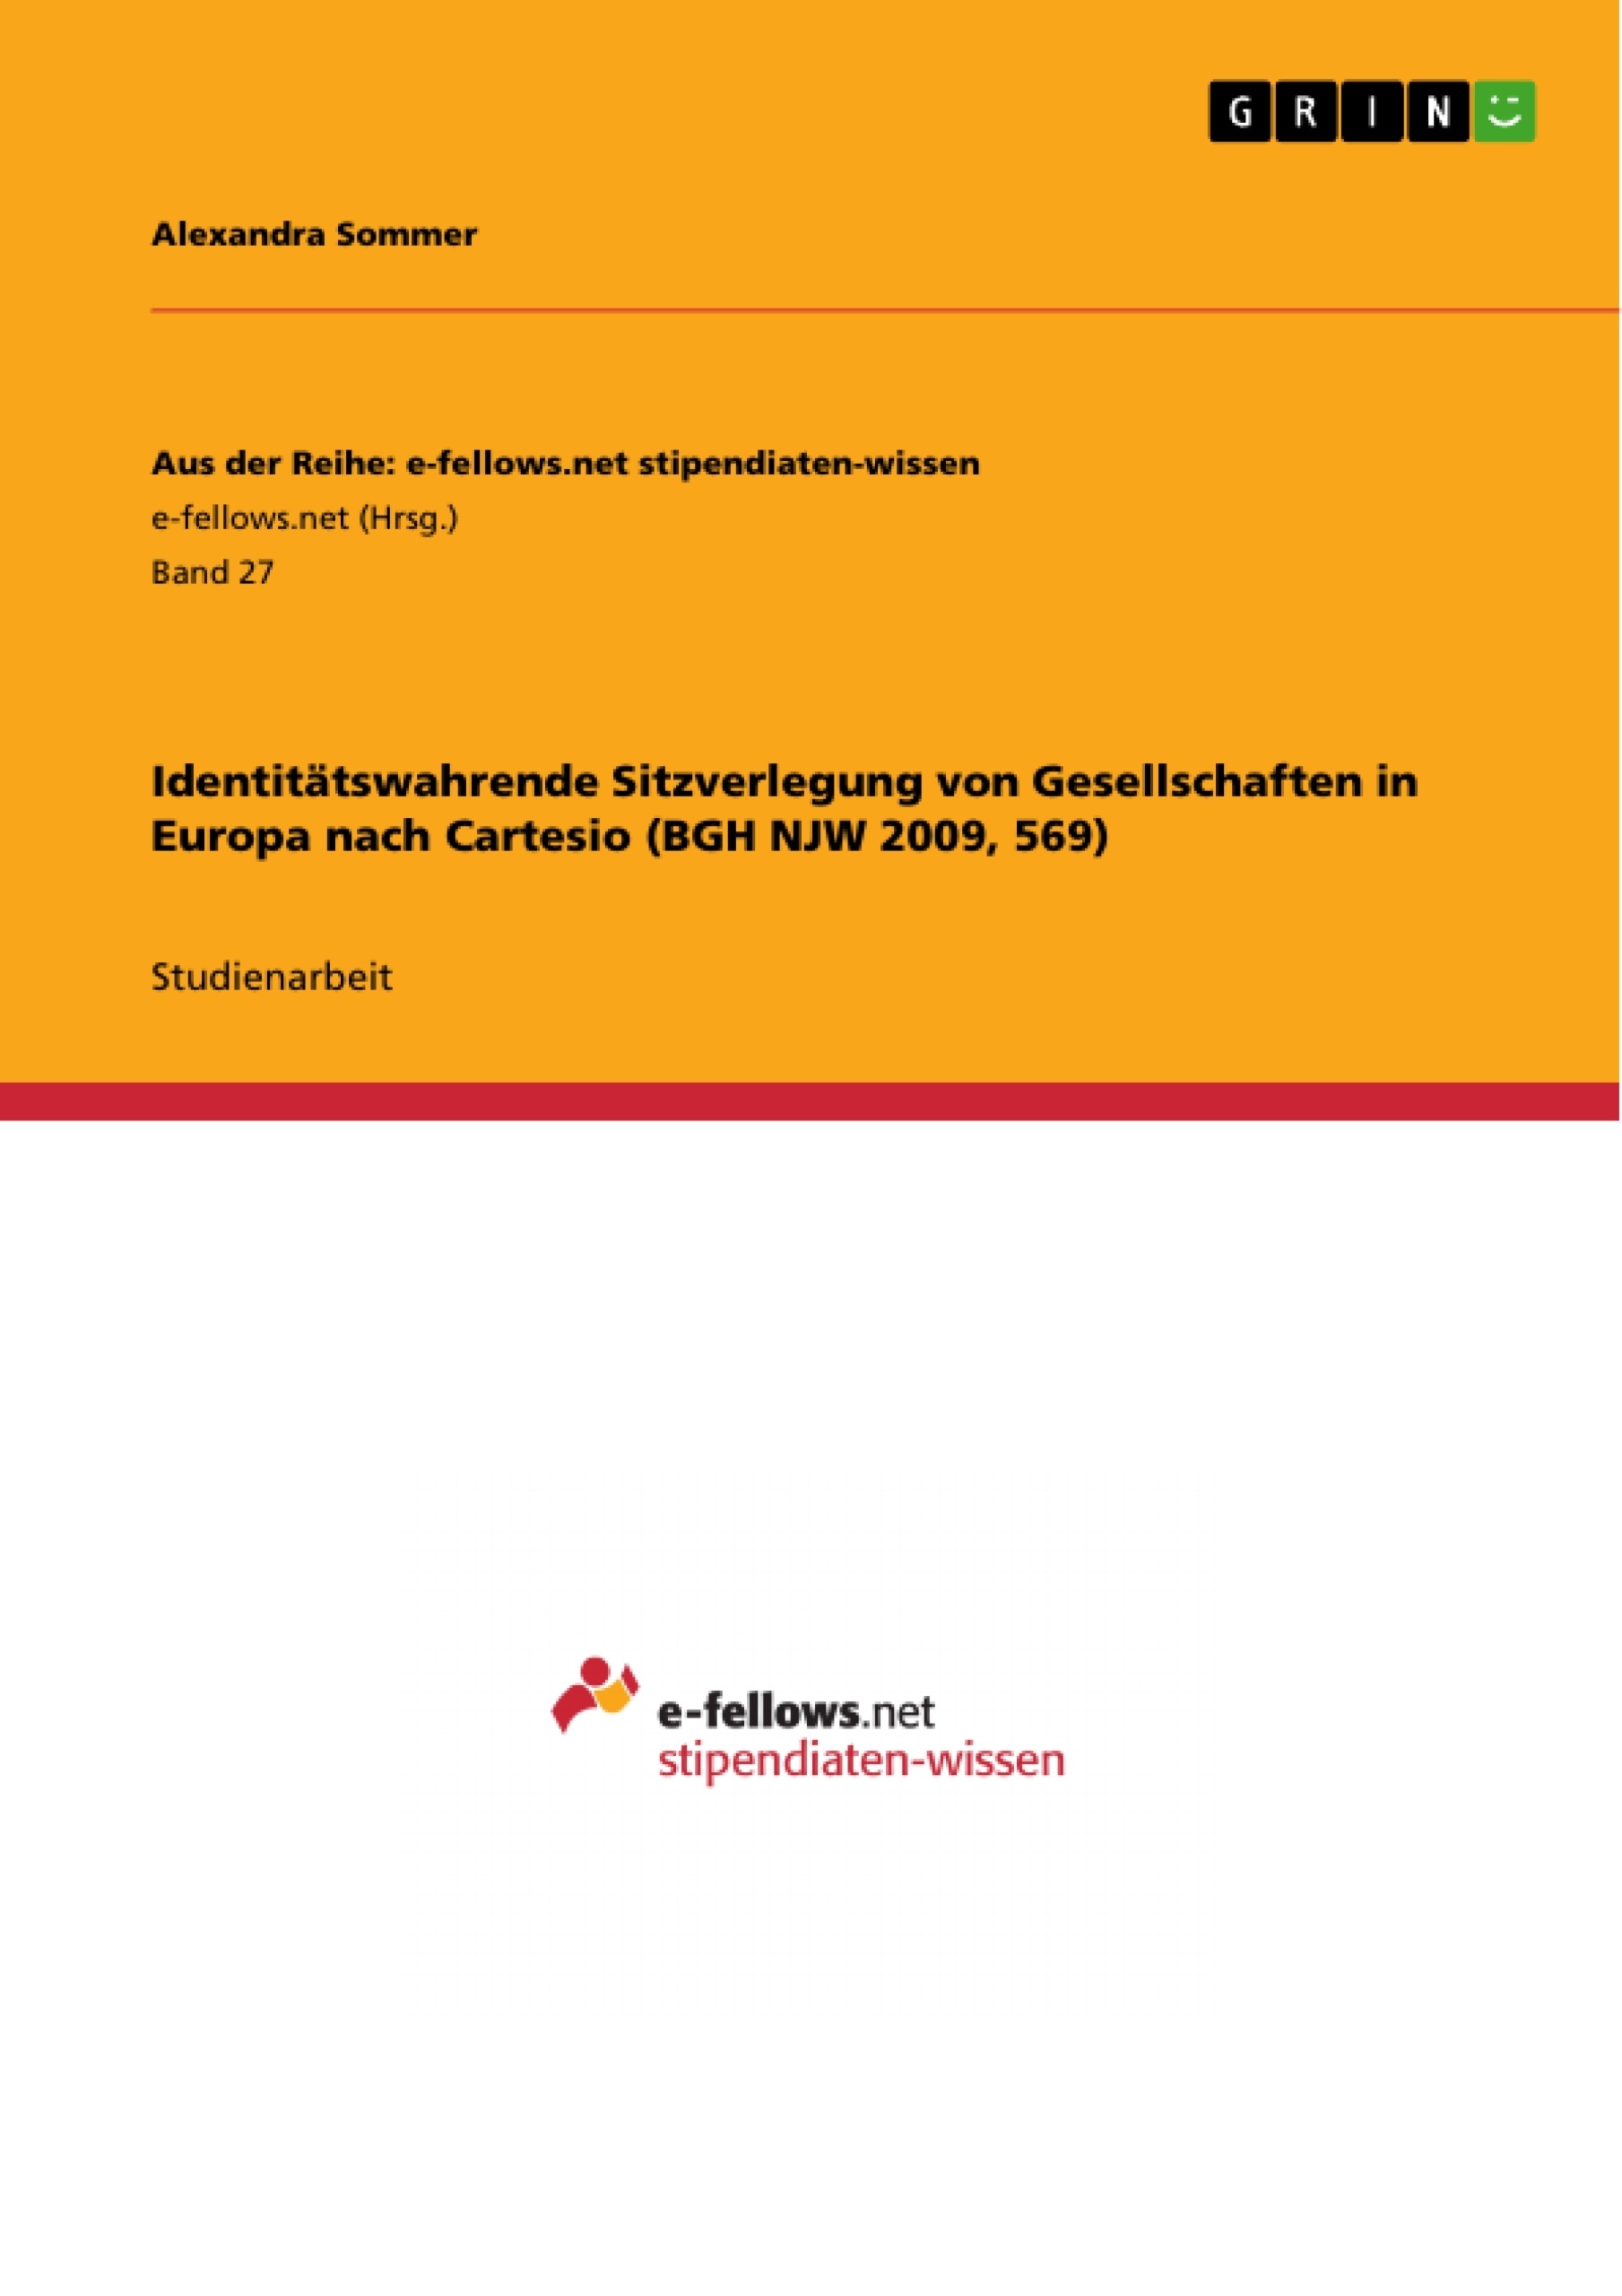 Título: Identitätswahrende Sitzverlegung von Gesellschaften in Europa nach Cartesio (BGH NJW 2009, 569)